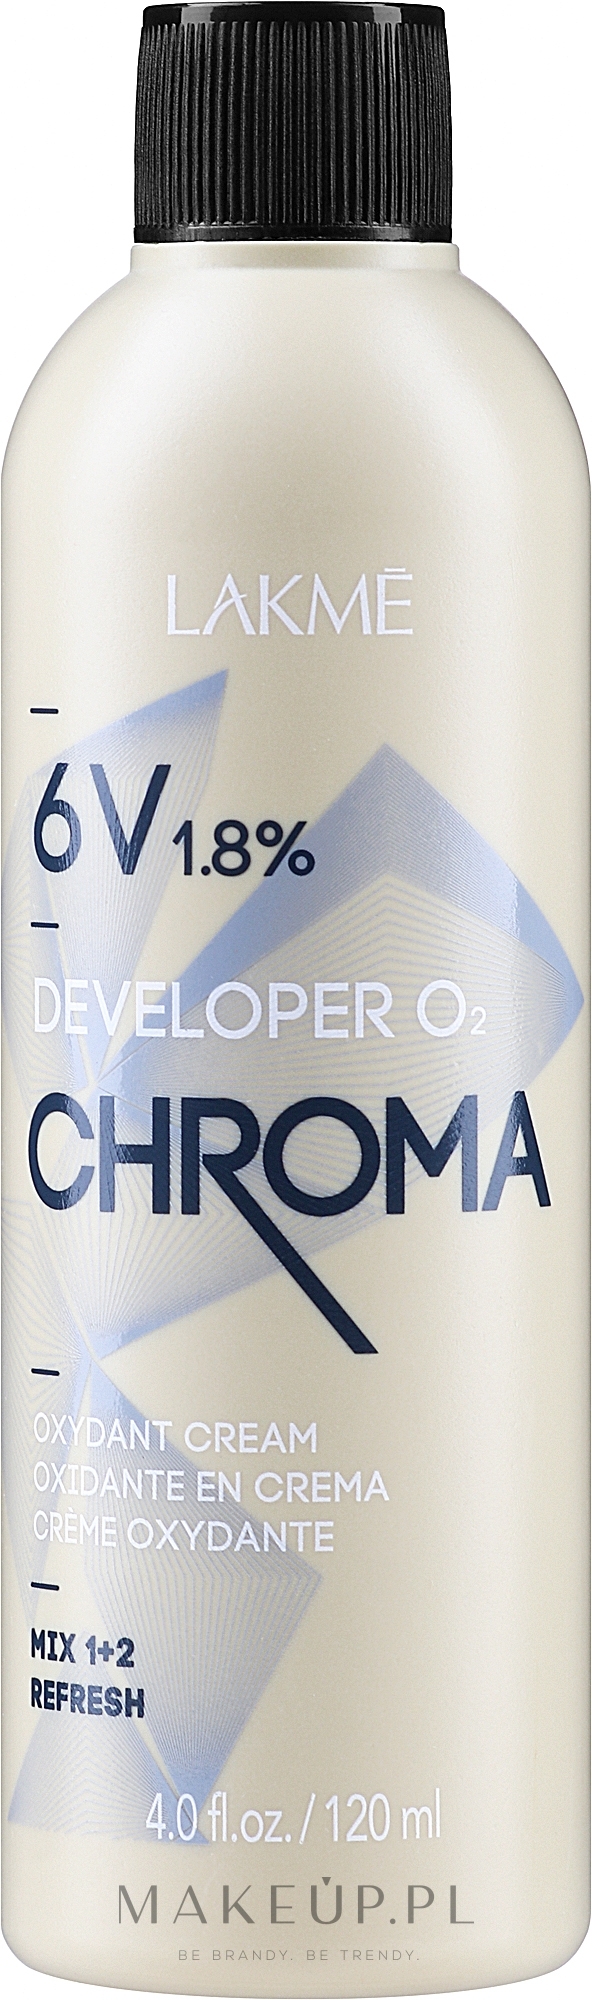 Emulsja utleniająca 1,8% (6 vol.) - Lakmé Chroma Developer O2 Oxydant Cream — Zdjęcie 120 ml